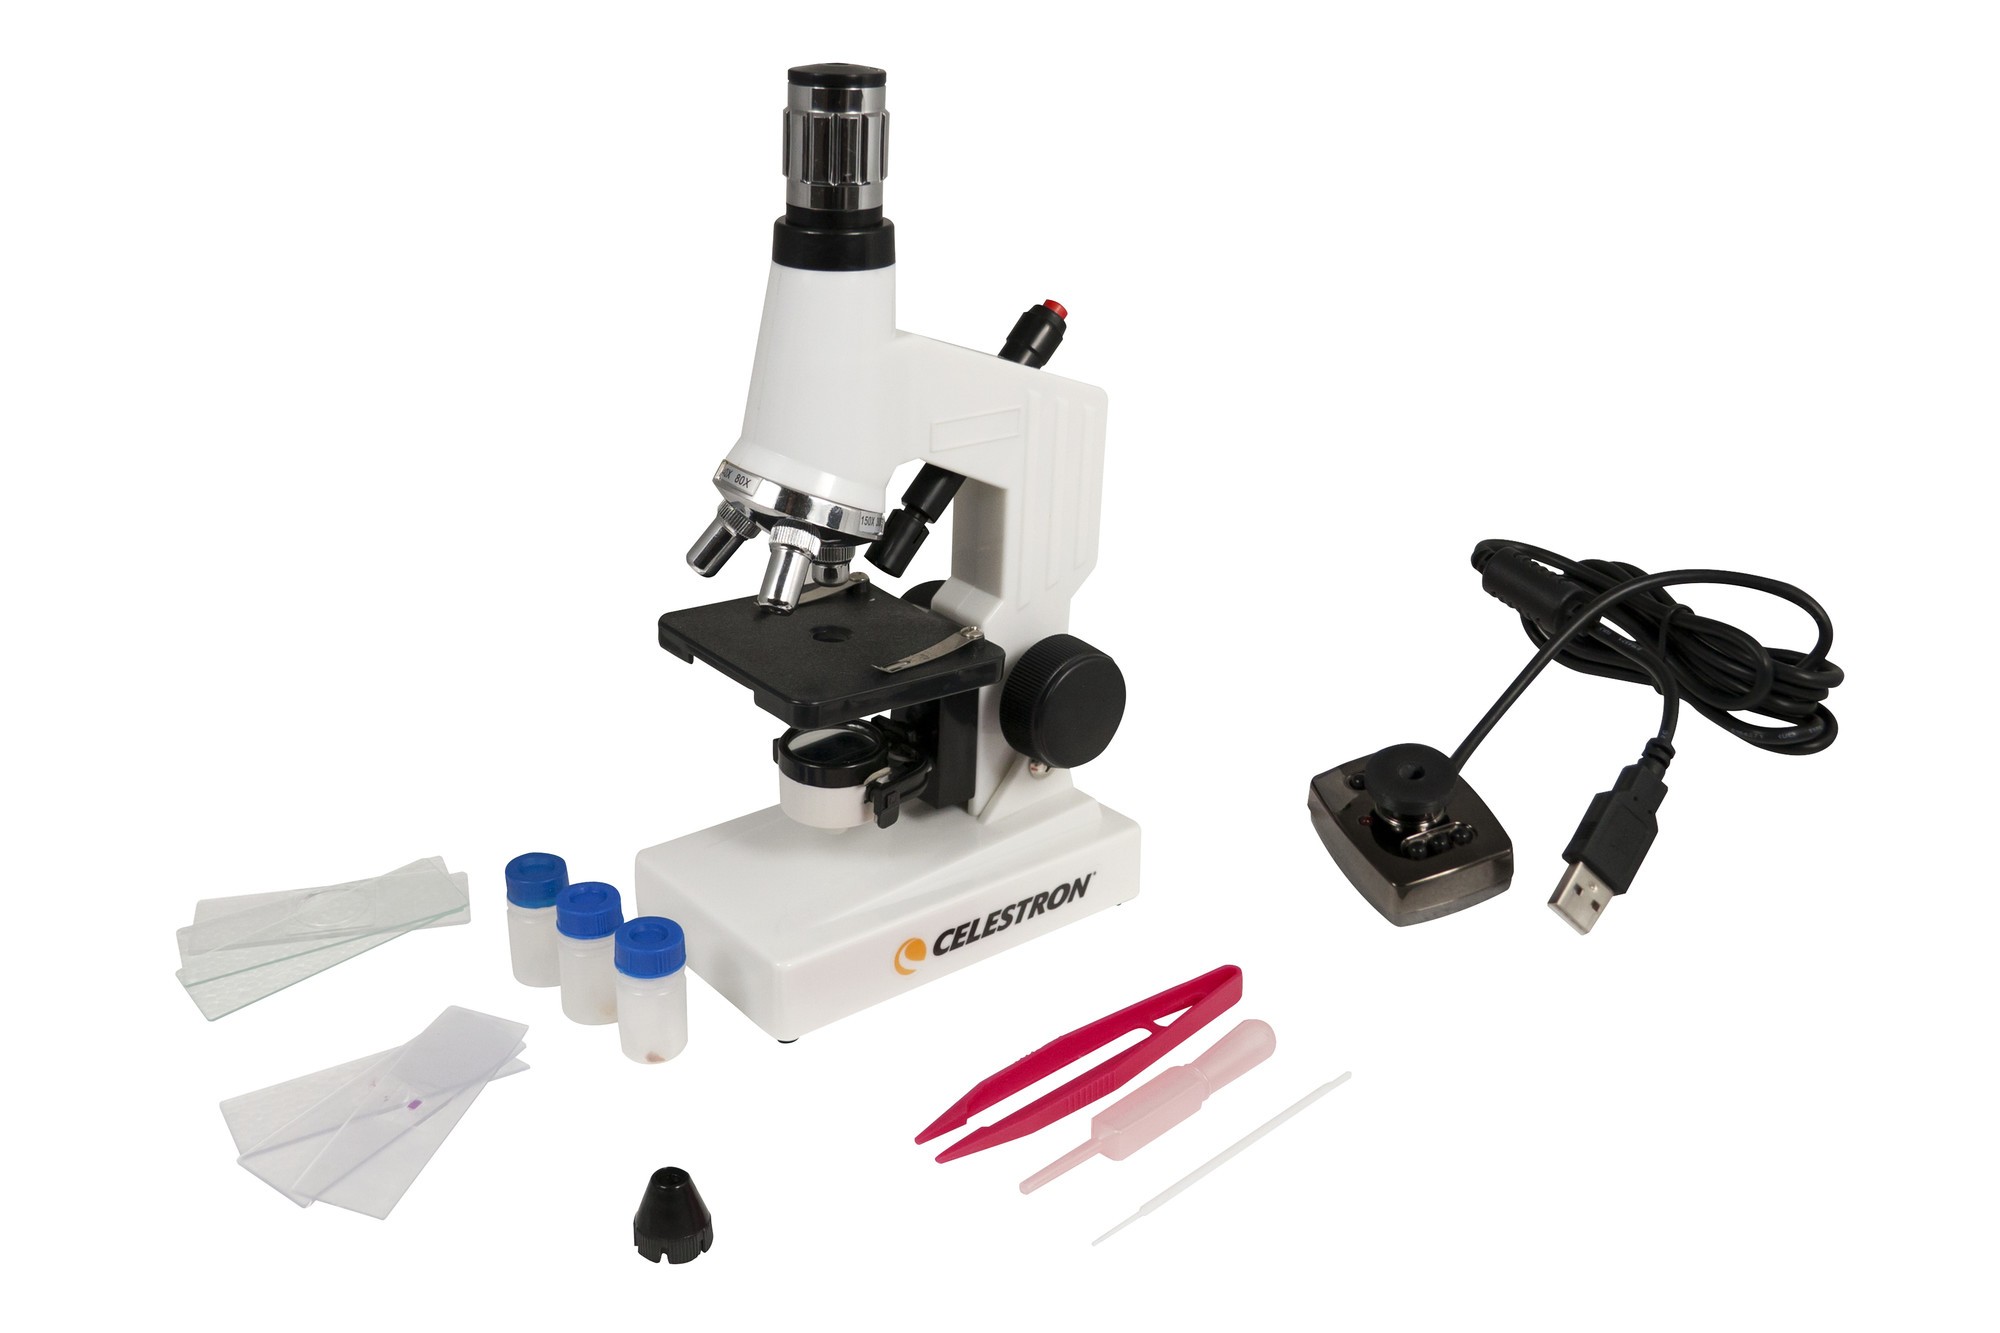 Celestron DMK - Digitales biologisches Mikroskop